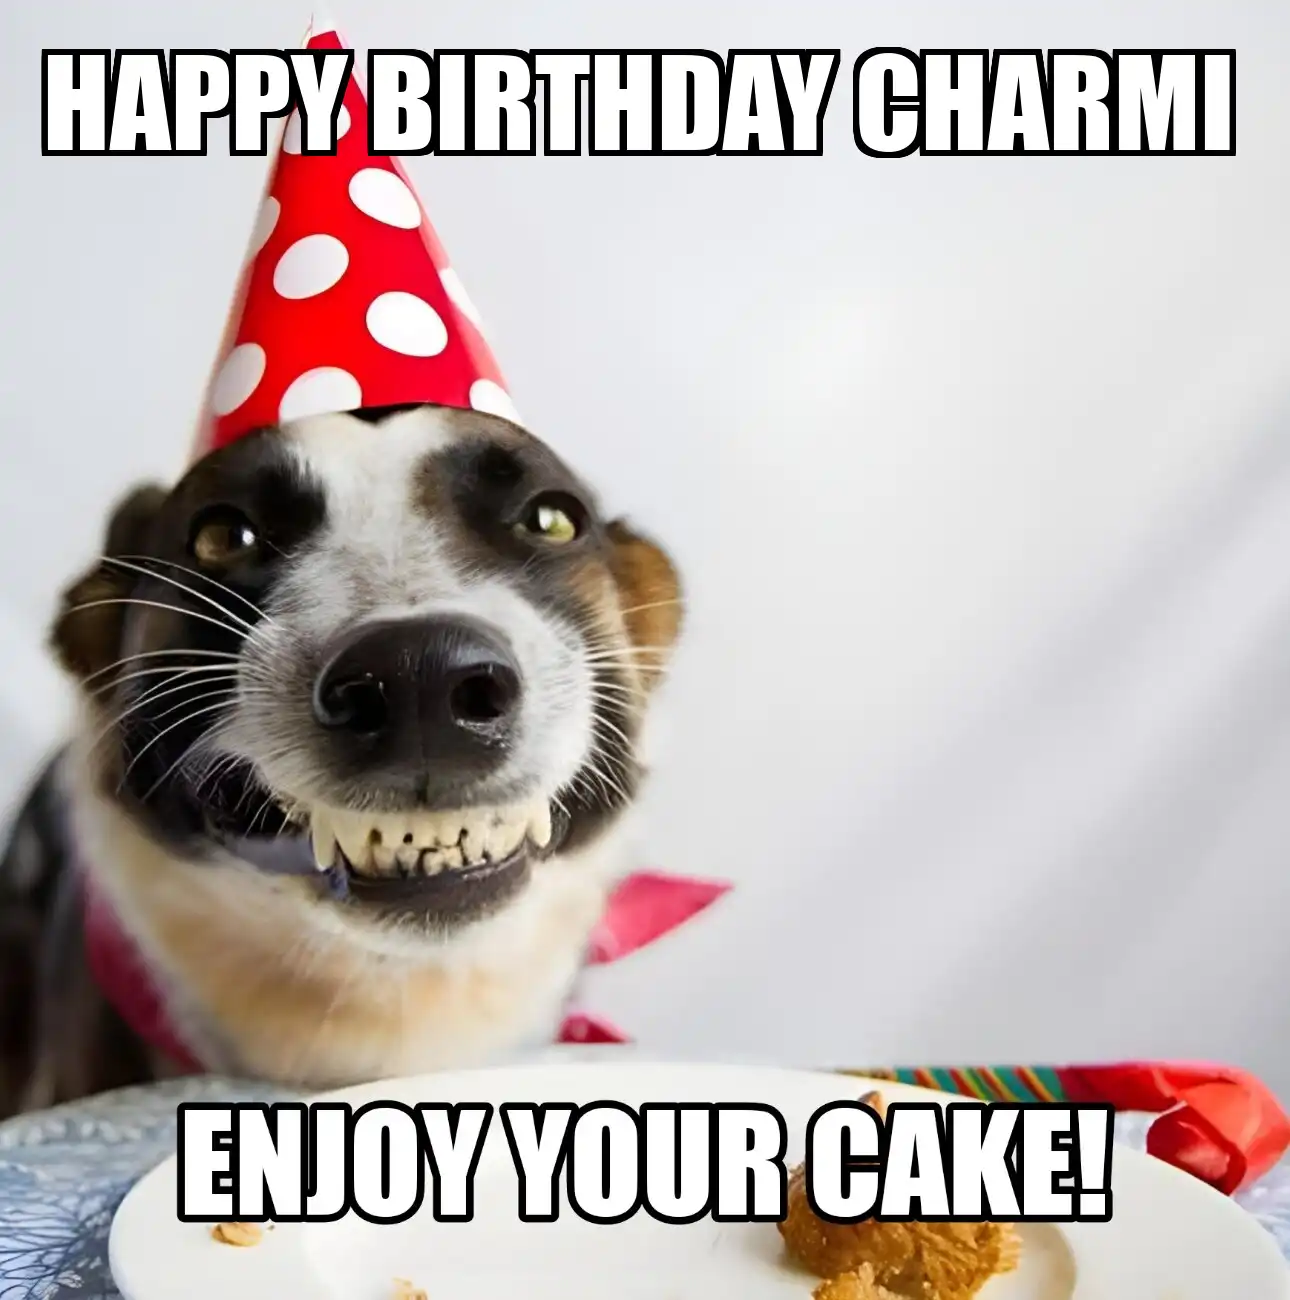 Happy Birthday Charmi Enjoy Your Cake Dog Meme